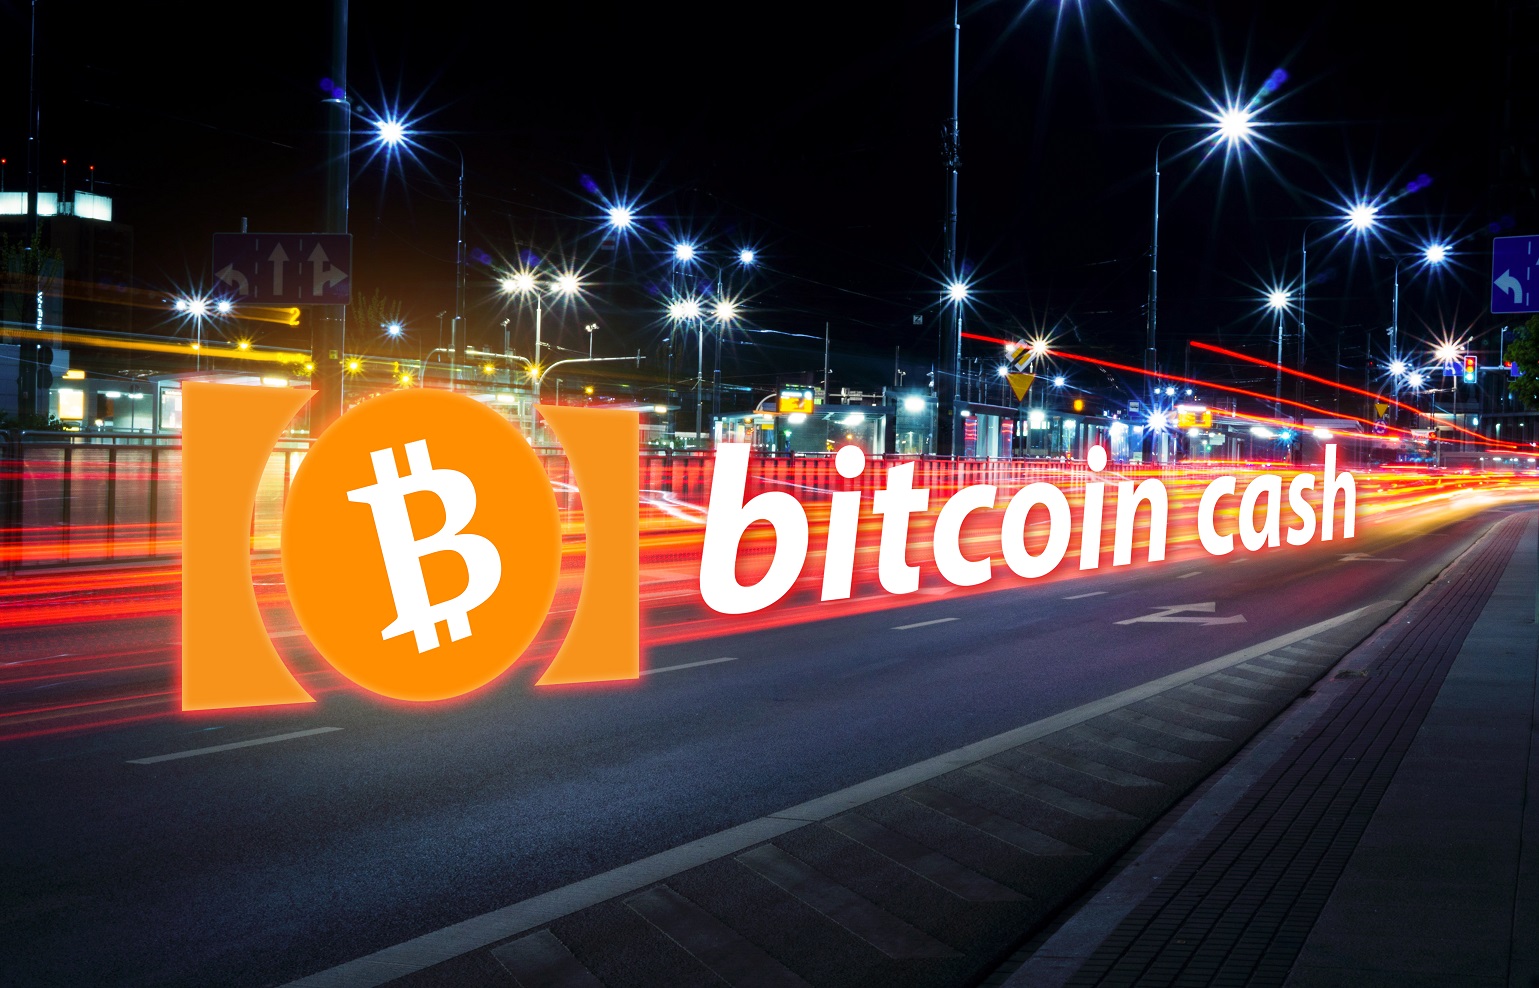  bitmain bitcoin cash -    